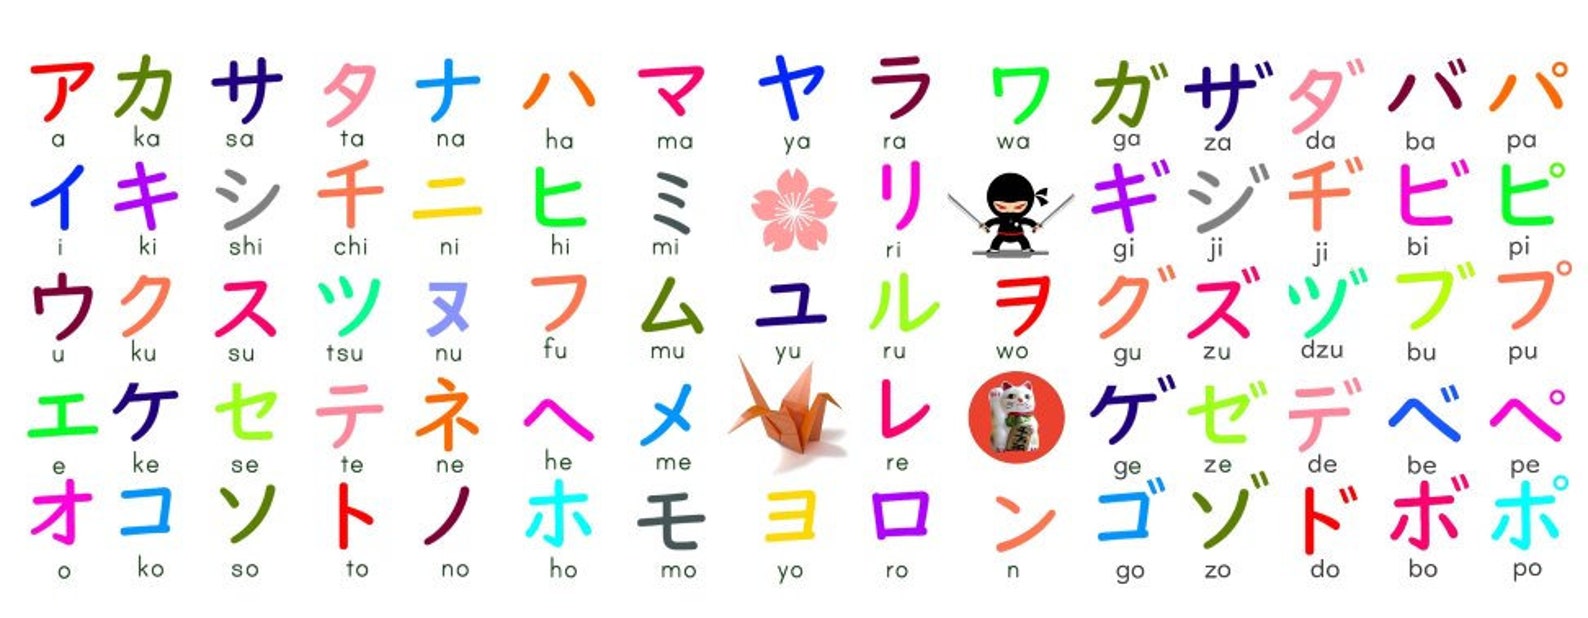 Japanese Katakana Chart Mug - Etsy